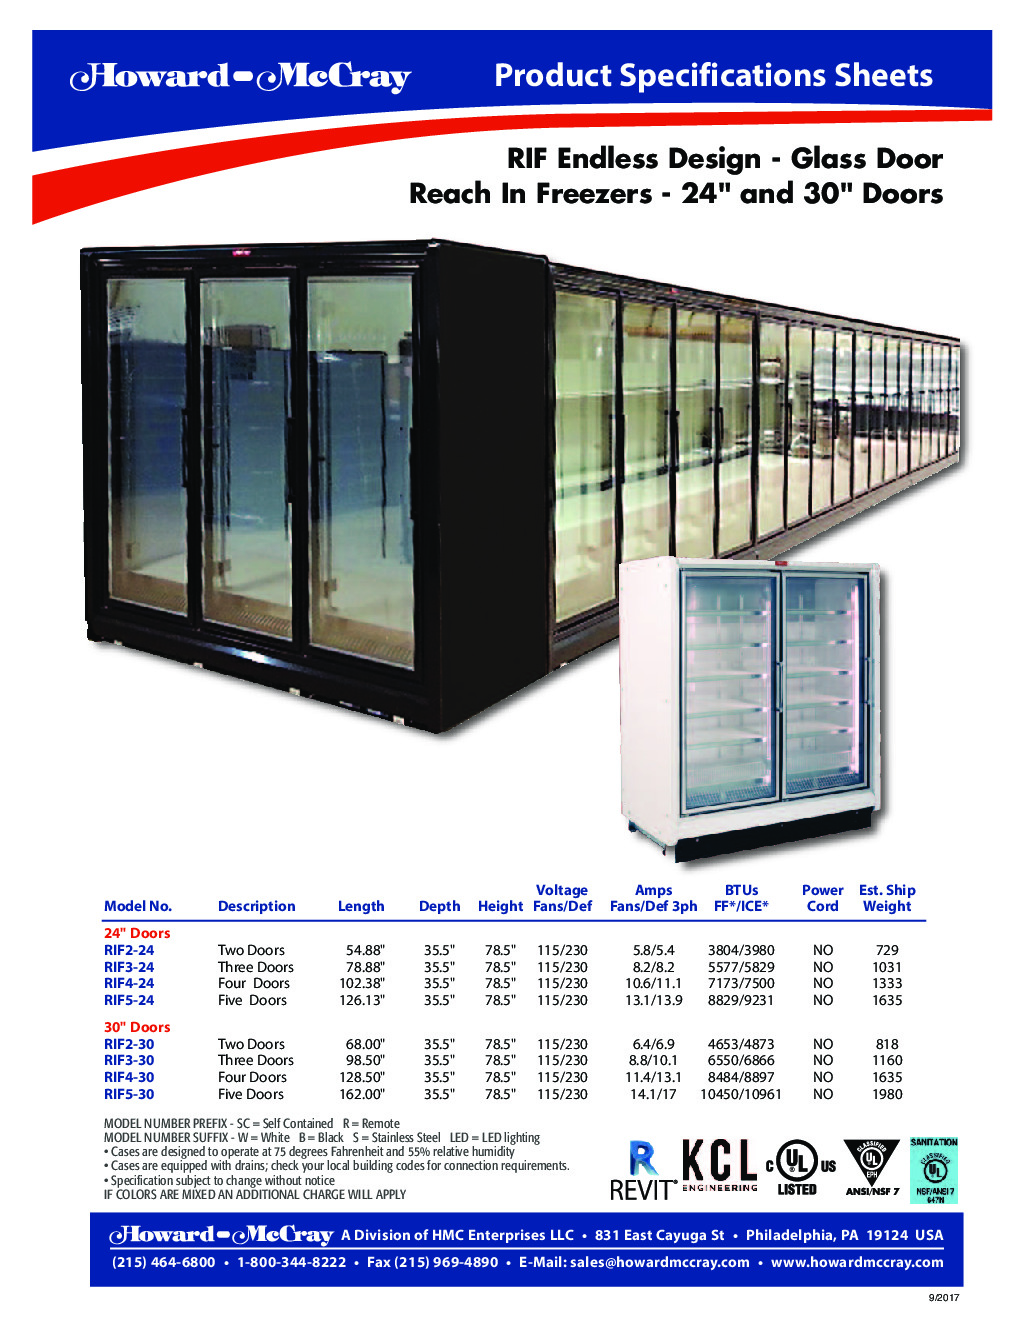 Howard-McCray RIF5-30-LED-B Merchandiser Freezer